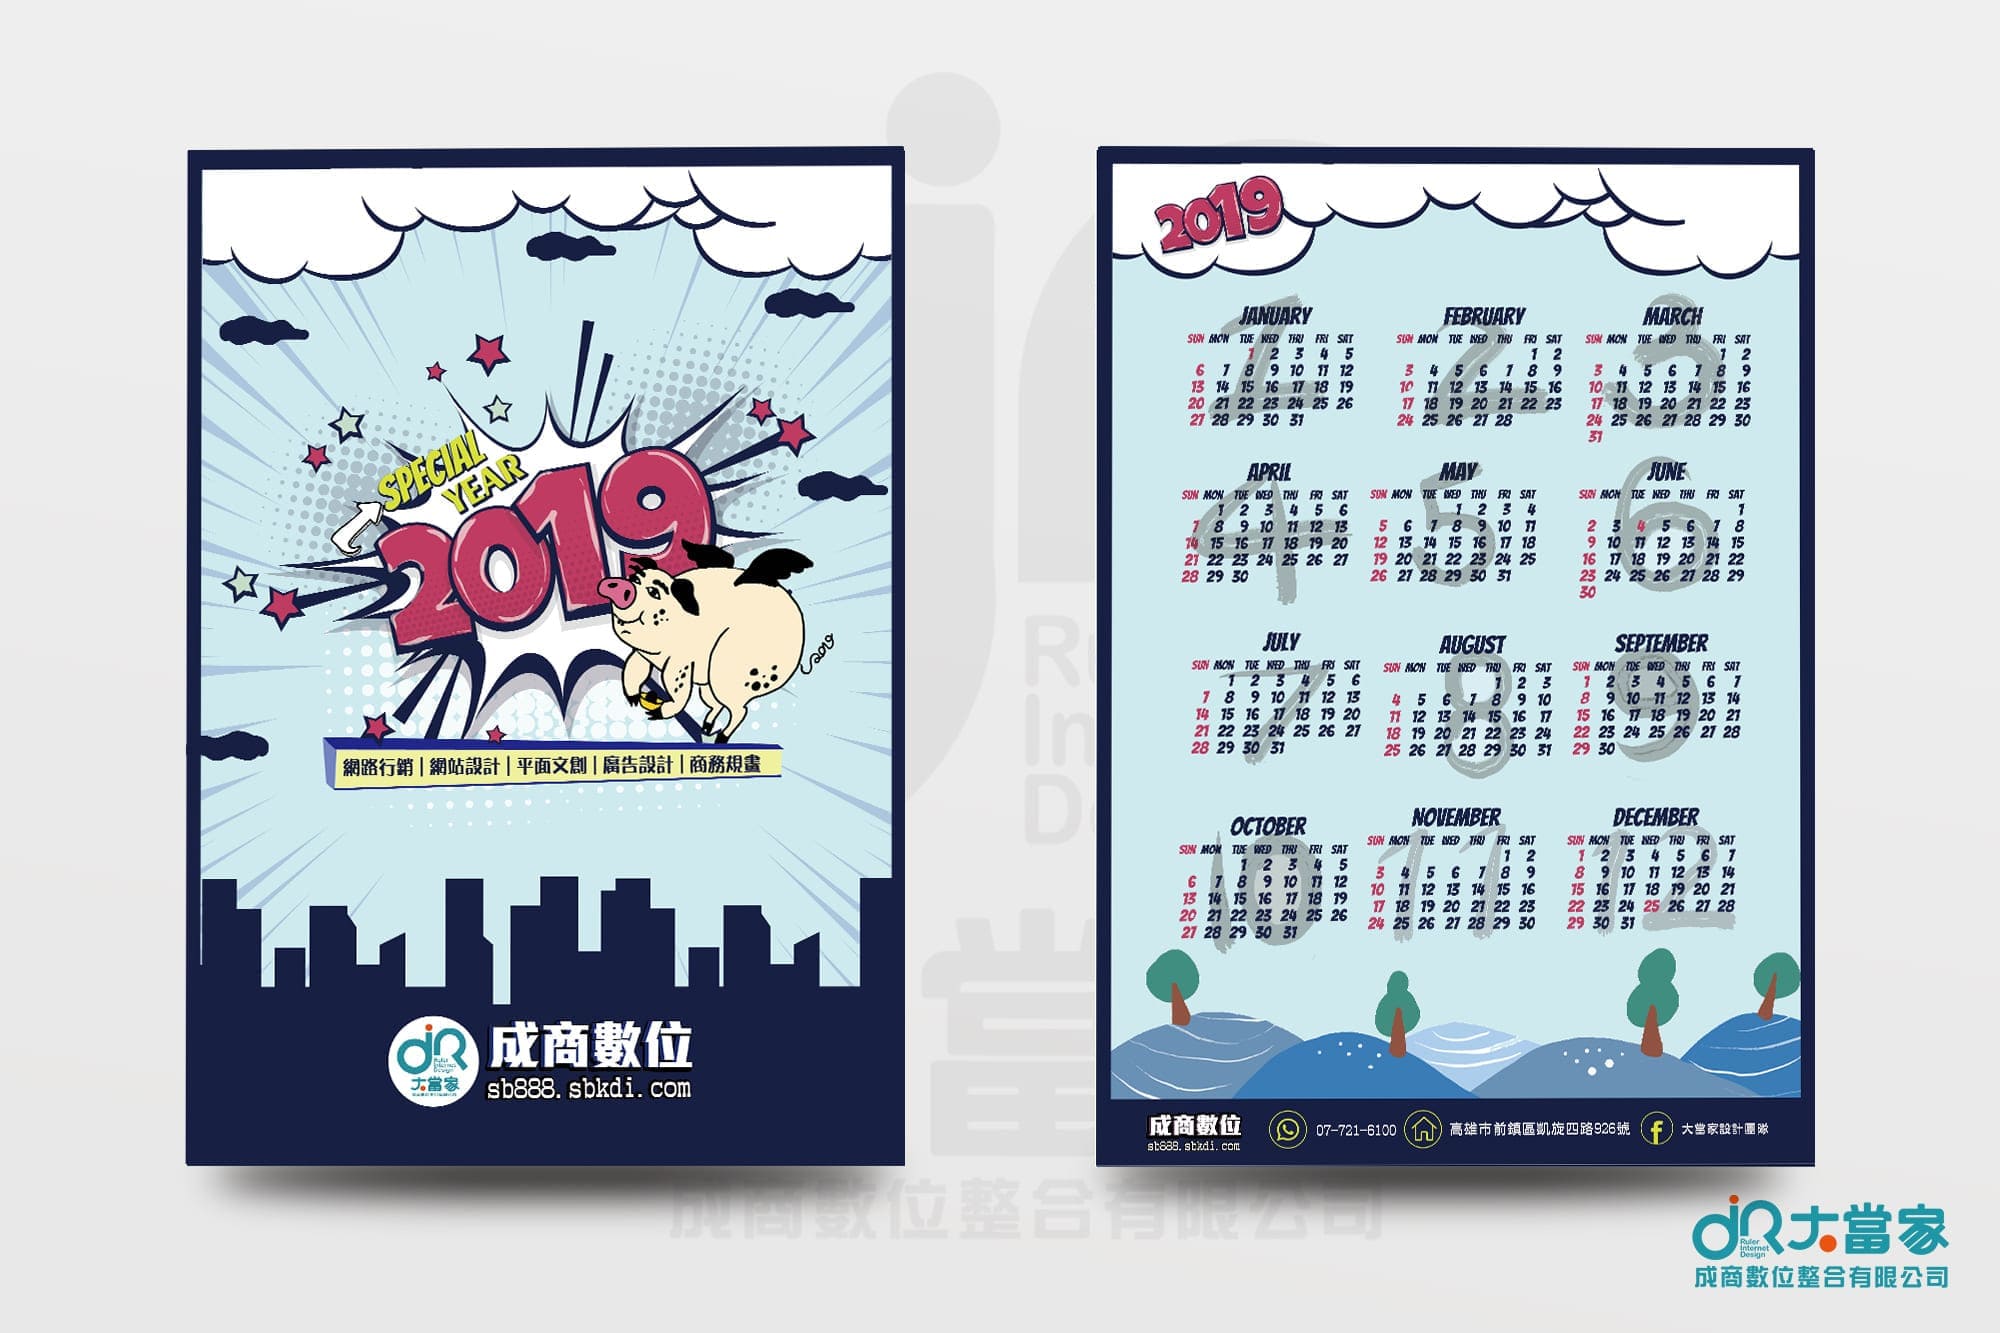 2019成商年曆,插畫設計,廣告設計